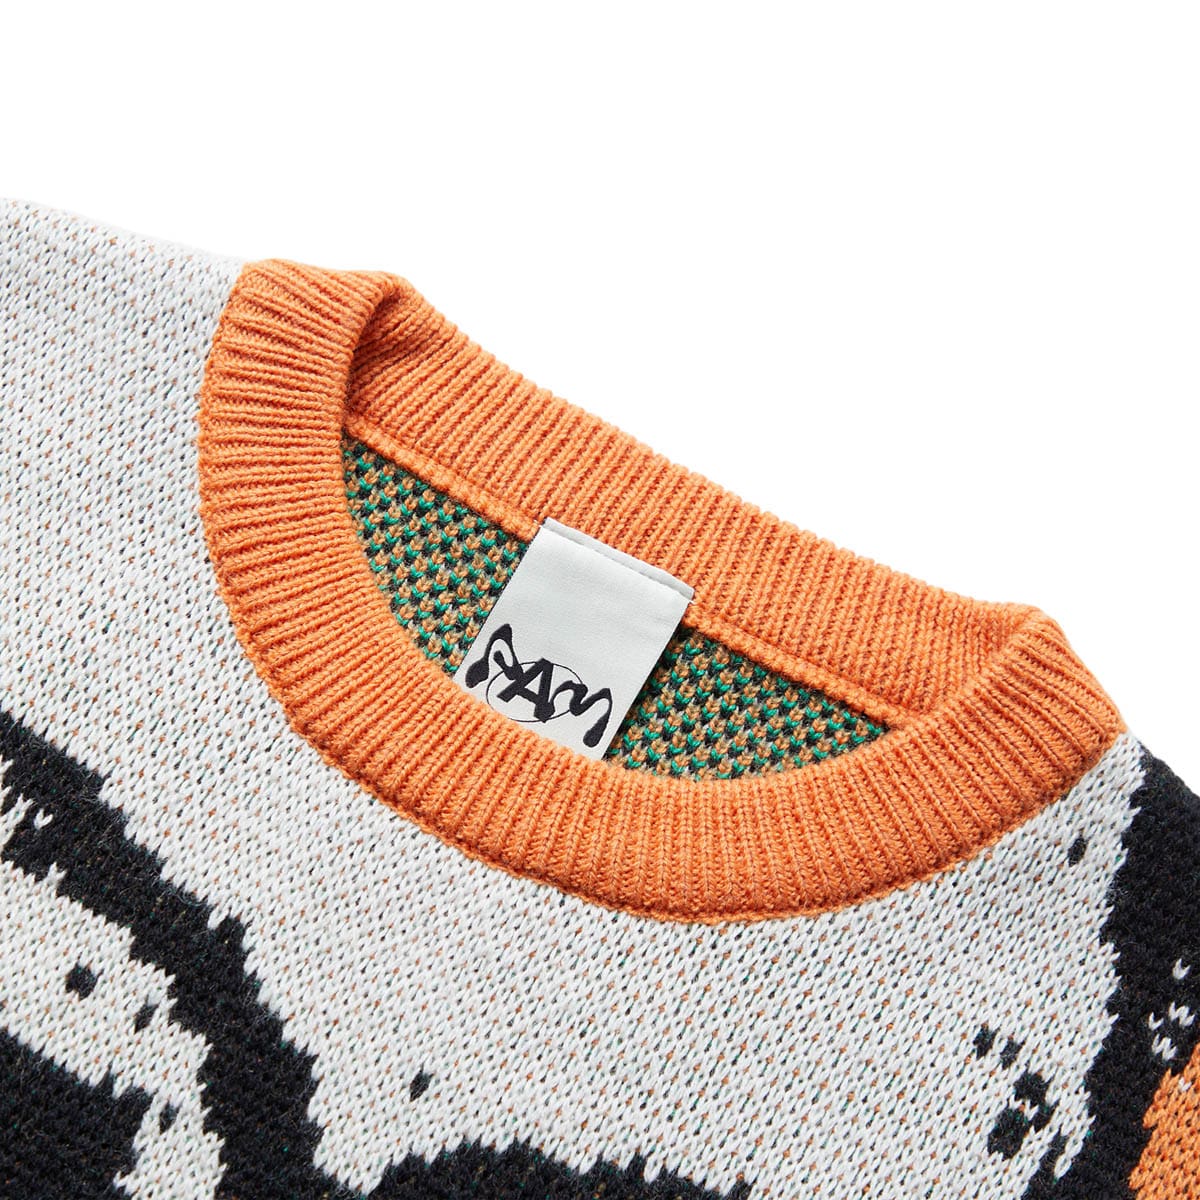 Perks and Mini Knitwear SKULLS CREW NECK KNIT